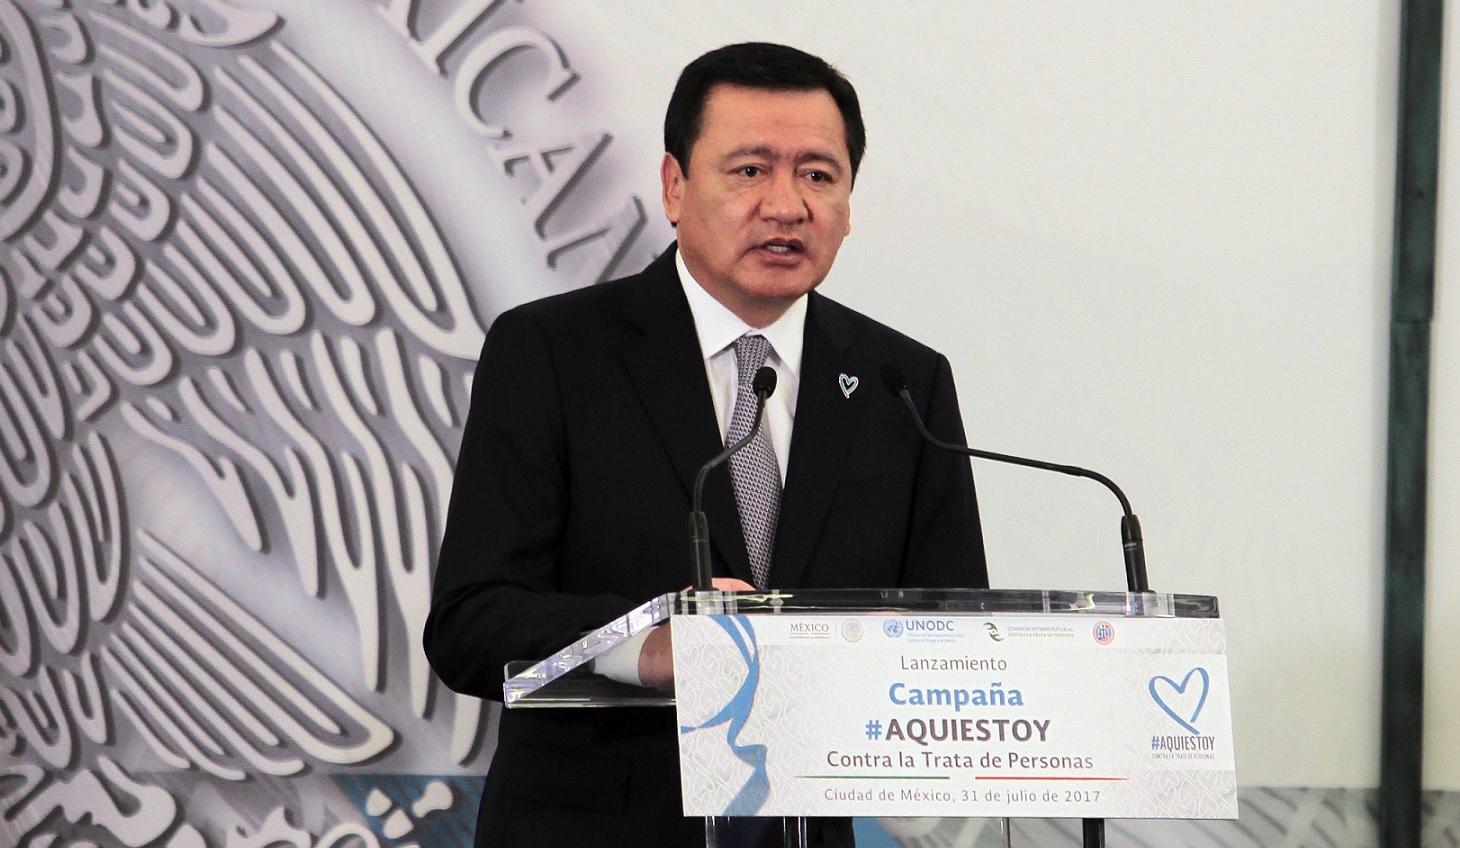 Osorio Chong campaña contra trata personas